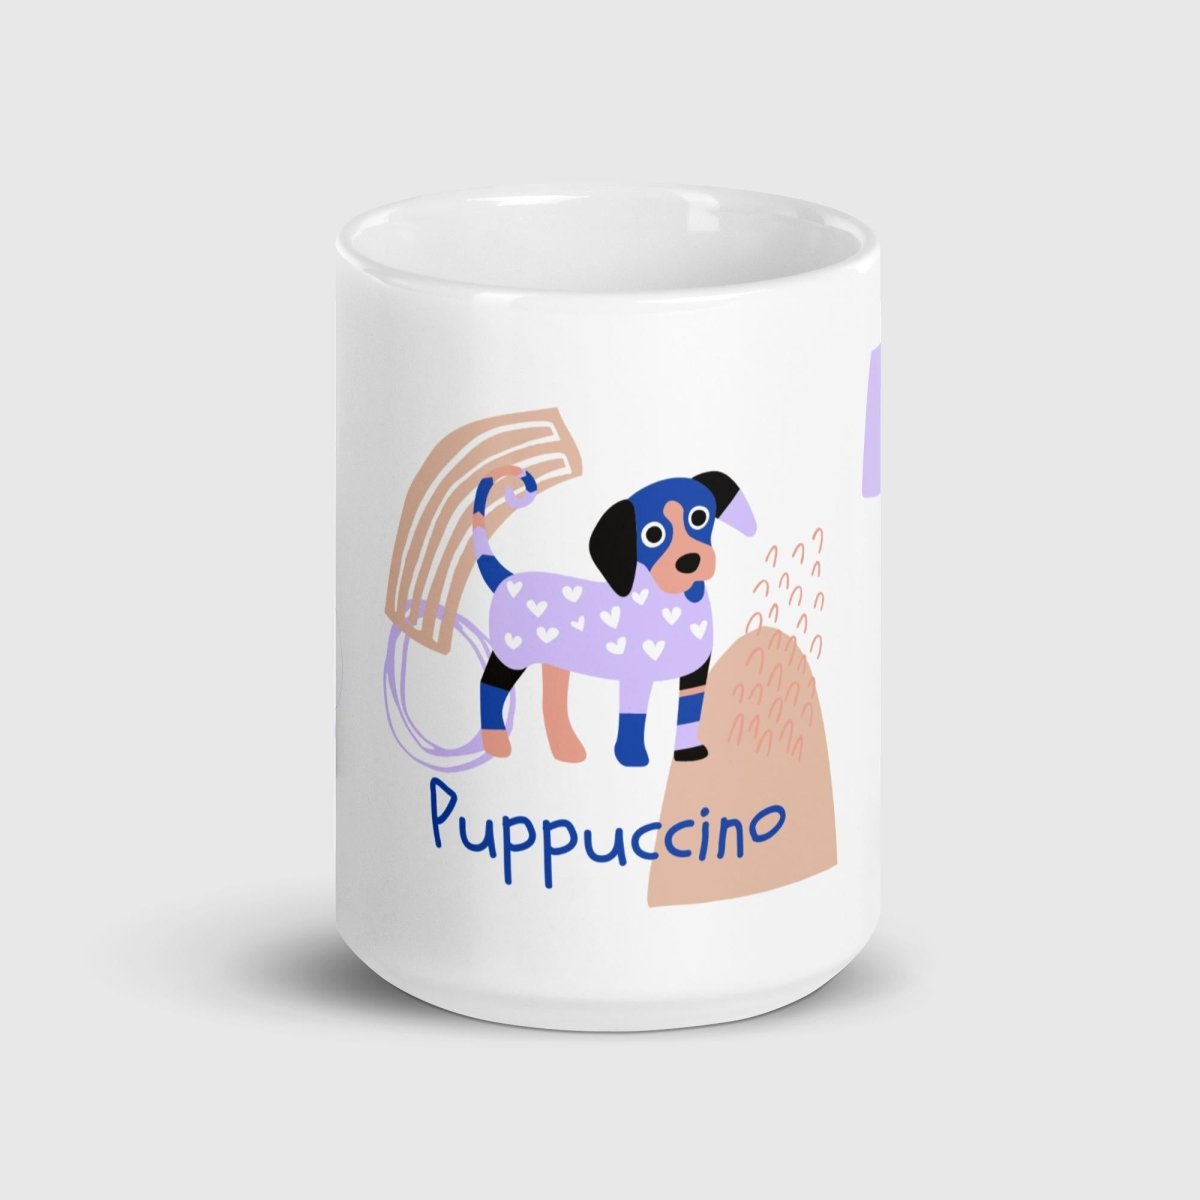 Puppuccino Mug - Funny Nikko